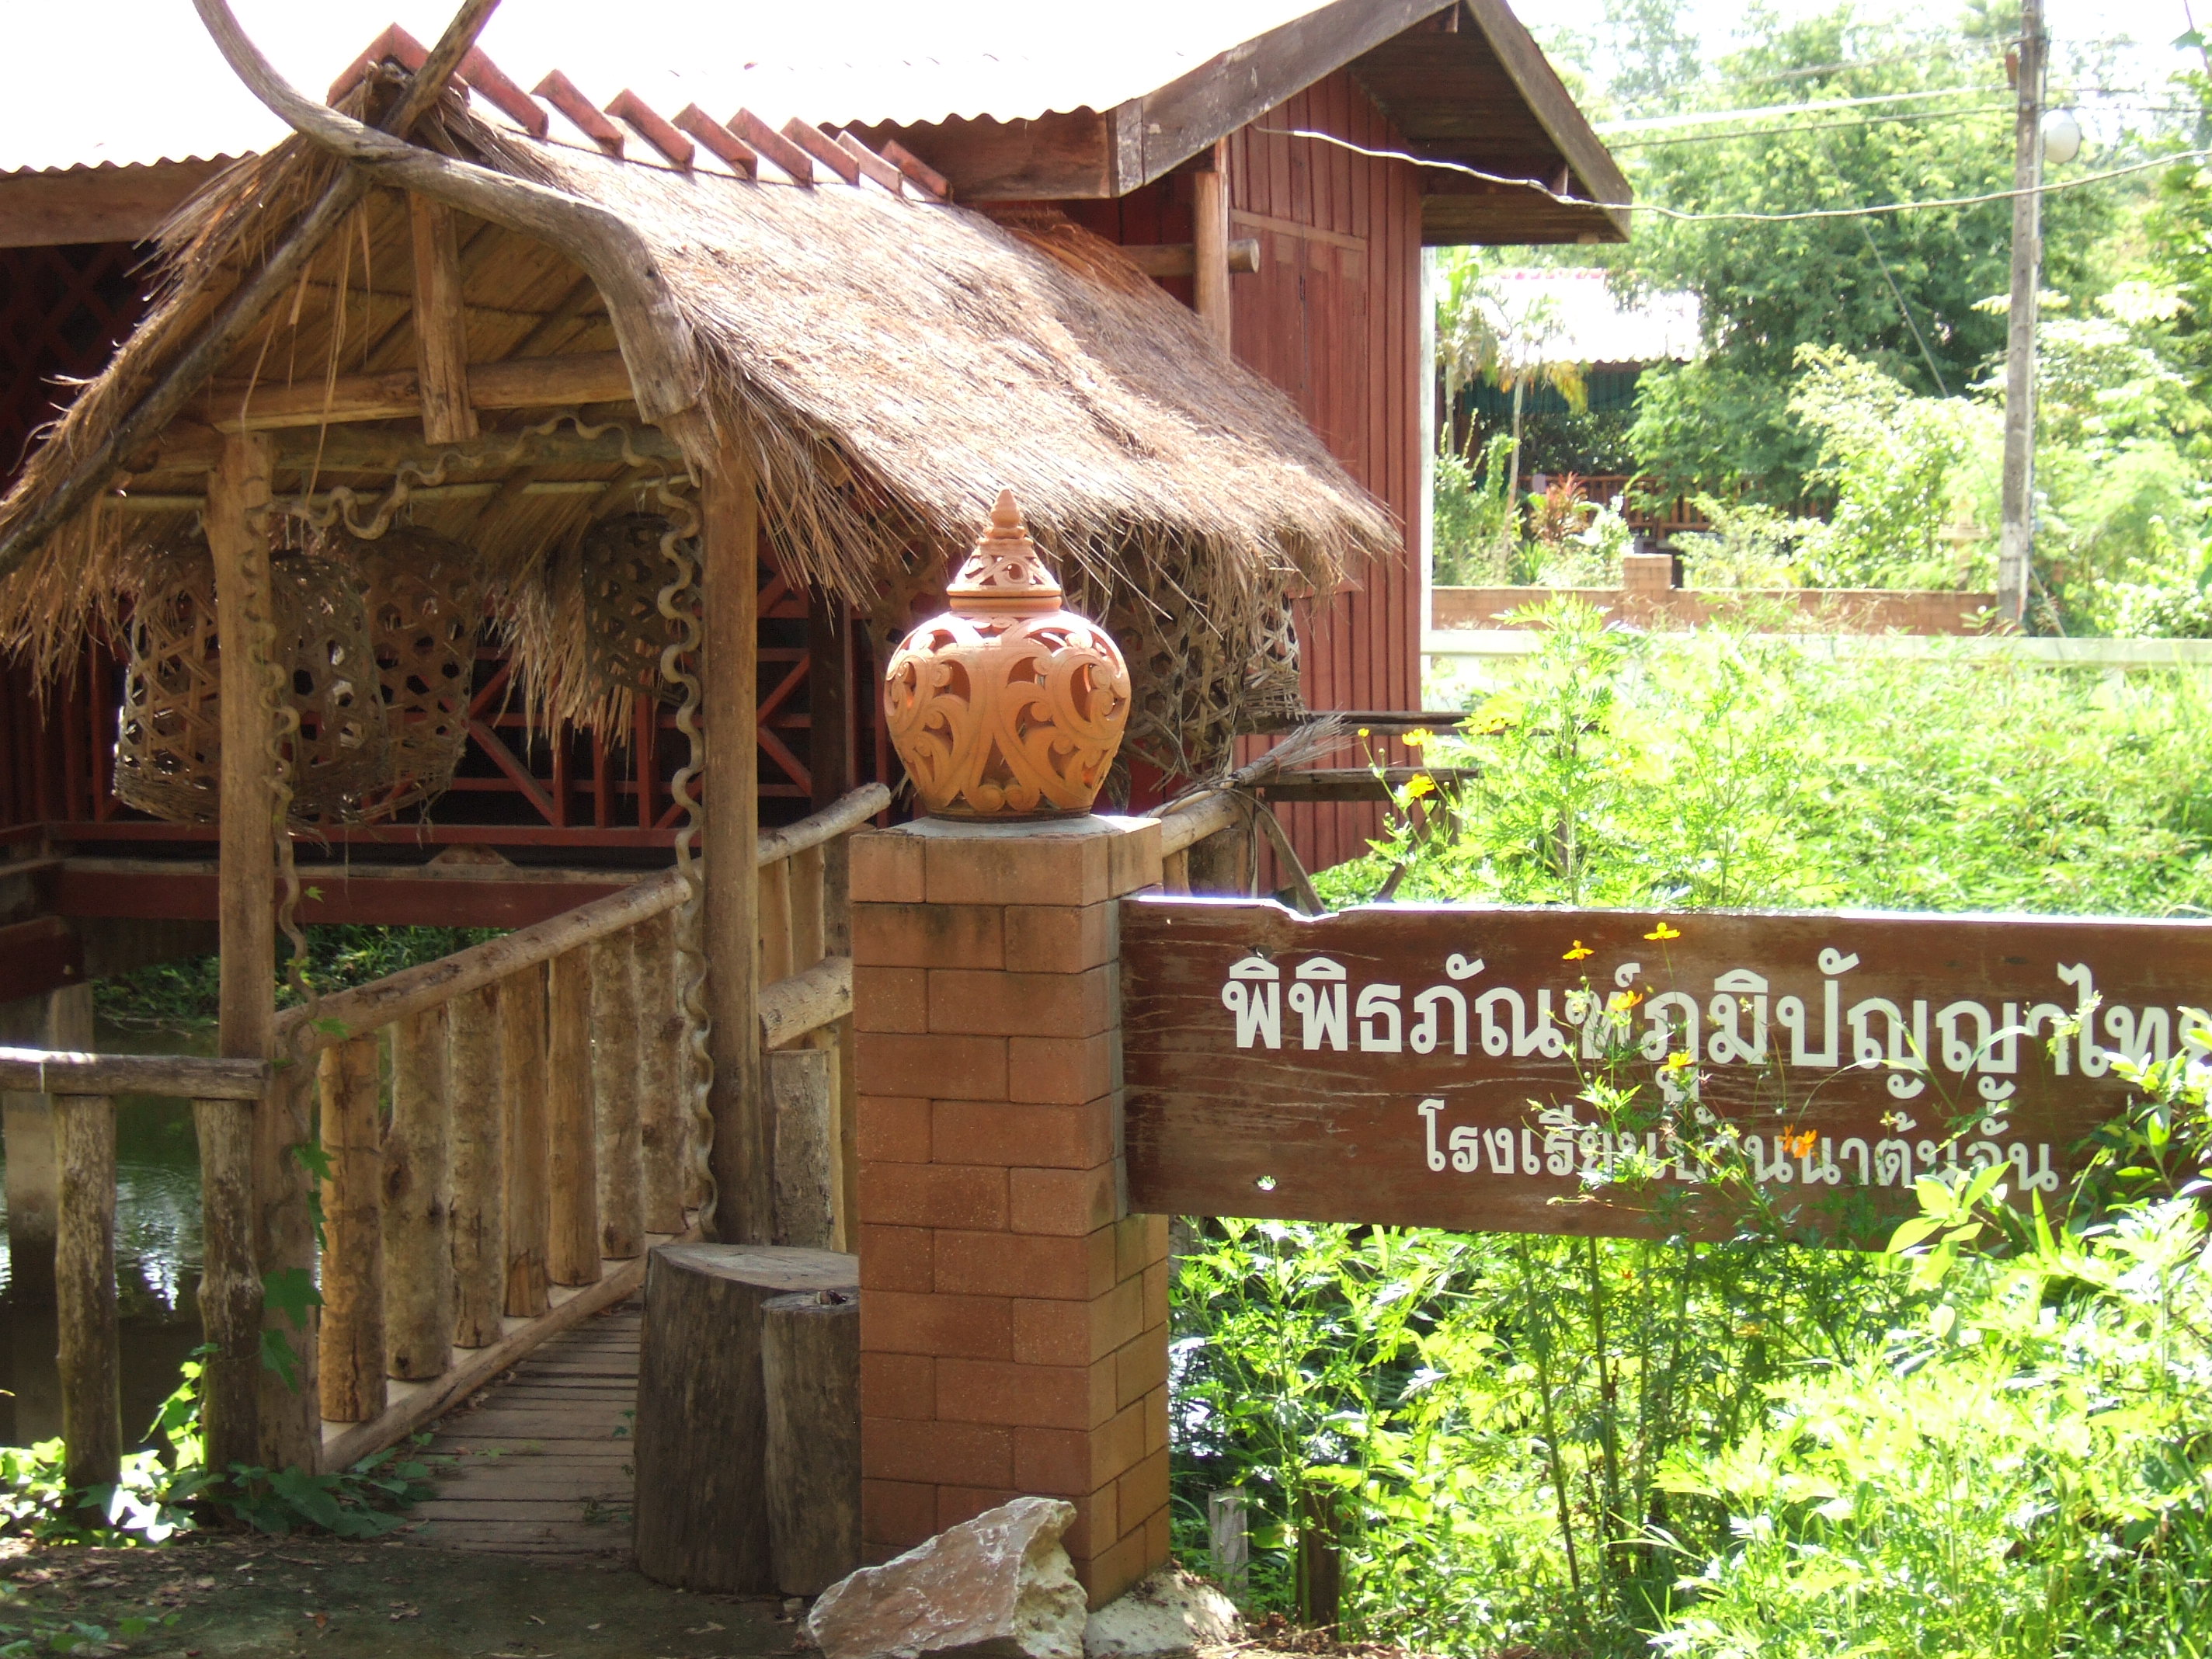 แหล่งเรียนรู้ภูมิปัญญาไทย "พิพิธภัณฑ์ภูมิปัญญาไทยโรงเรียนบ้านนาต้นจั่น"